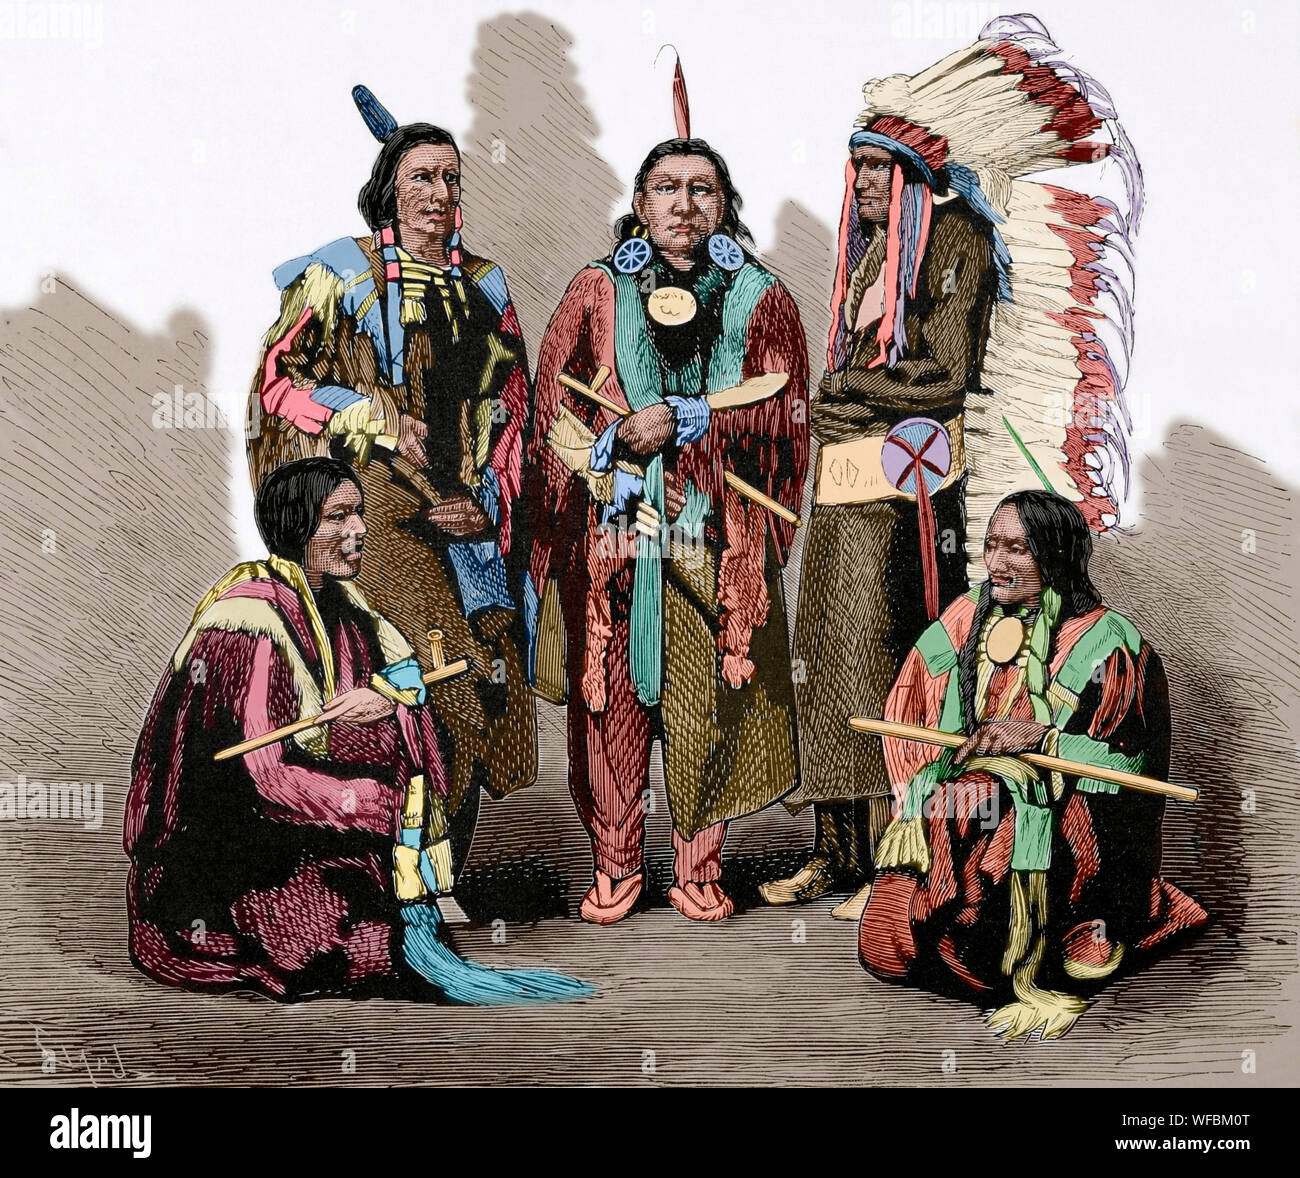 Tolle Sioux Krieg von 1876. Schlacht am Little Bighorn (Juni 25-26, 1876). Bewaffnete Auseinandersetzung zwischen vereinten Kräfte der Northern Cheyenne, Lakota, Arapaho Stämmen und die Kräfte der 7 Cavalry Regiment der US-Armee, unter dem Kommando von Lieutenant Colonel George Armstrong Custer, der starb am 25. Juni während der Kämpfe. Die amerikanische Armee erlitt eine große Niederlage. Fünf der wichtigsten Häuptlinge der Sioux Indianer, die den Bighorn Hinterhalt am 25. Juni, wo Custer starb vorbereitet. Von links nach rechts: Red Fox, Bärenfellmütze, Red Dog, felsigen halten Sie sich links und Leben tragen. Kupferstich von capuz. La Ilustra Stockfoto